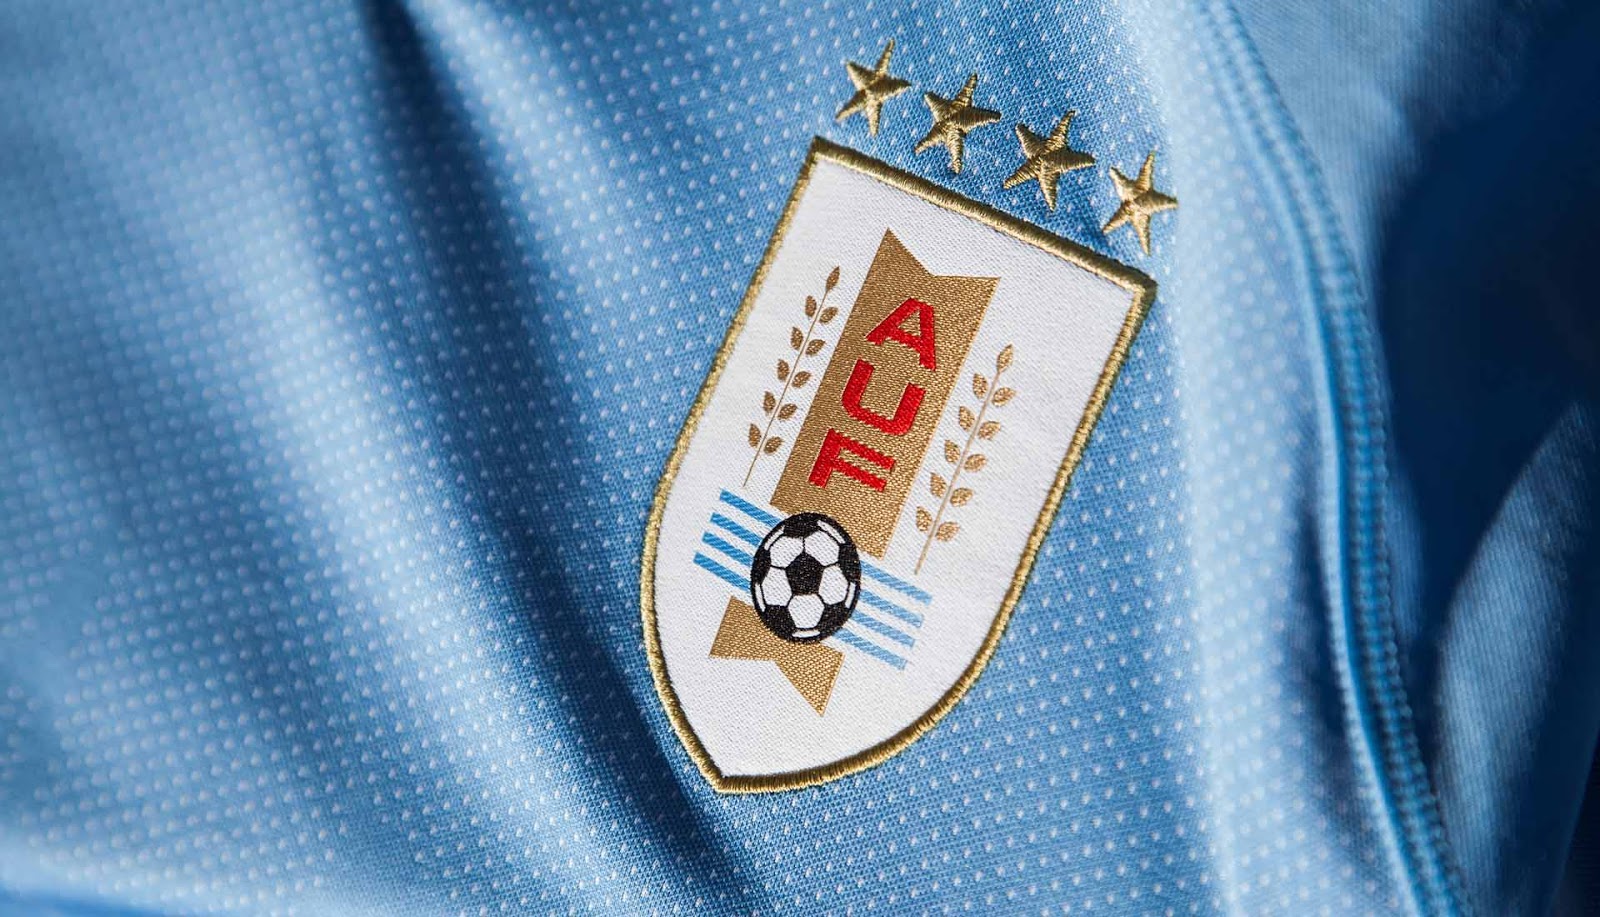 قميص منتخب أوروجواى بالـ 4 نجمات